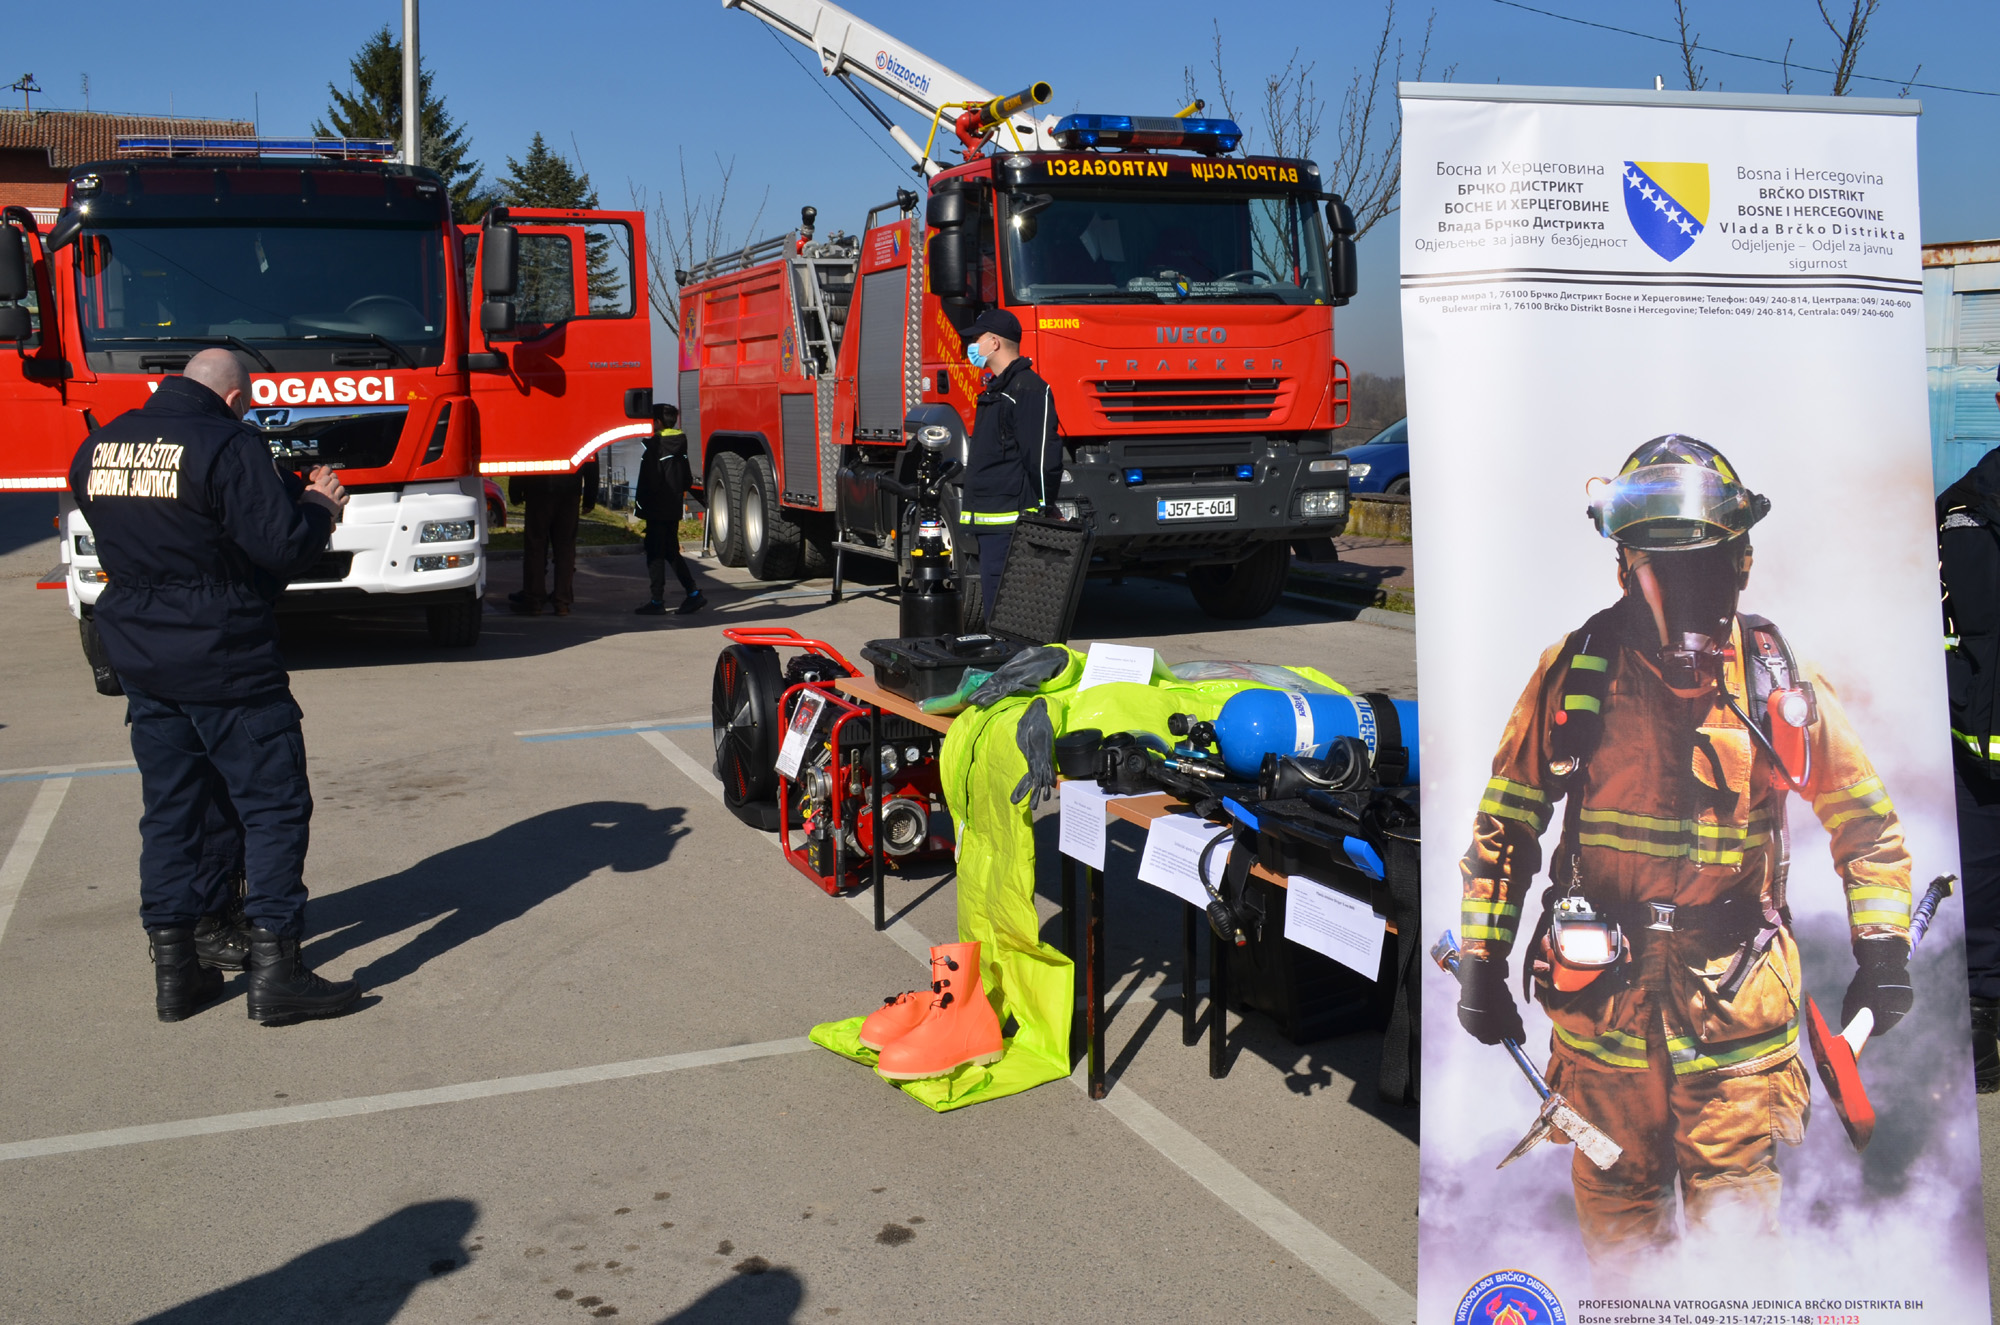 Prezentirano novo vatrogasno vozilo i oprema Civilne zaštite i spasilačkog tima